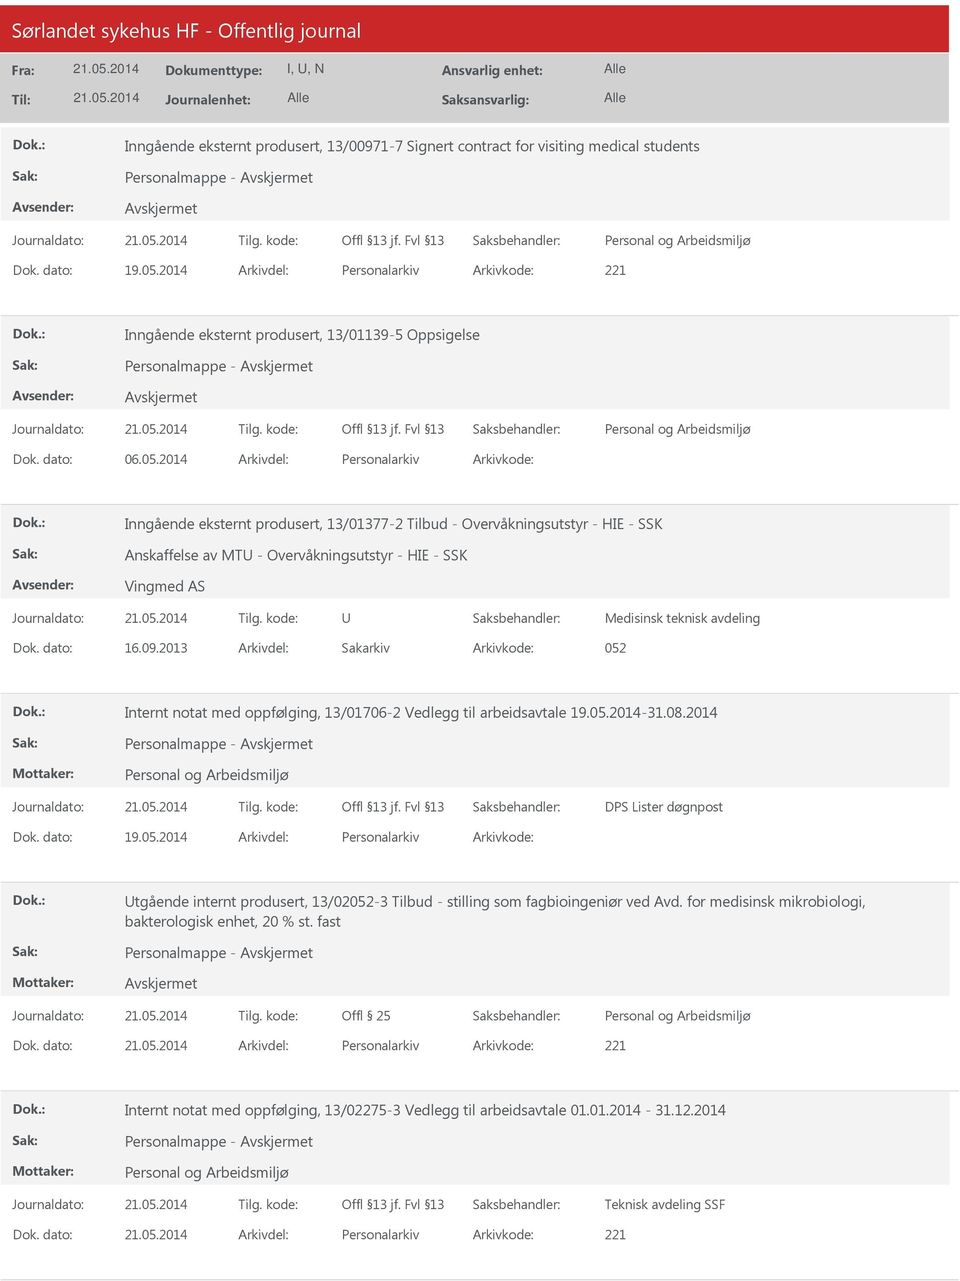 2014 Arkivdel: Personalarkiv Arkivkode: Inngående eksternt produsert, 13/01377-2 Tilbud - Overvåkningsutstyr - HIE - SSK Anskaffelse av MTU - Overvåkningsutstyr - HIE - SSK Vingmed AS U Medisinsk